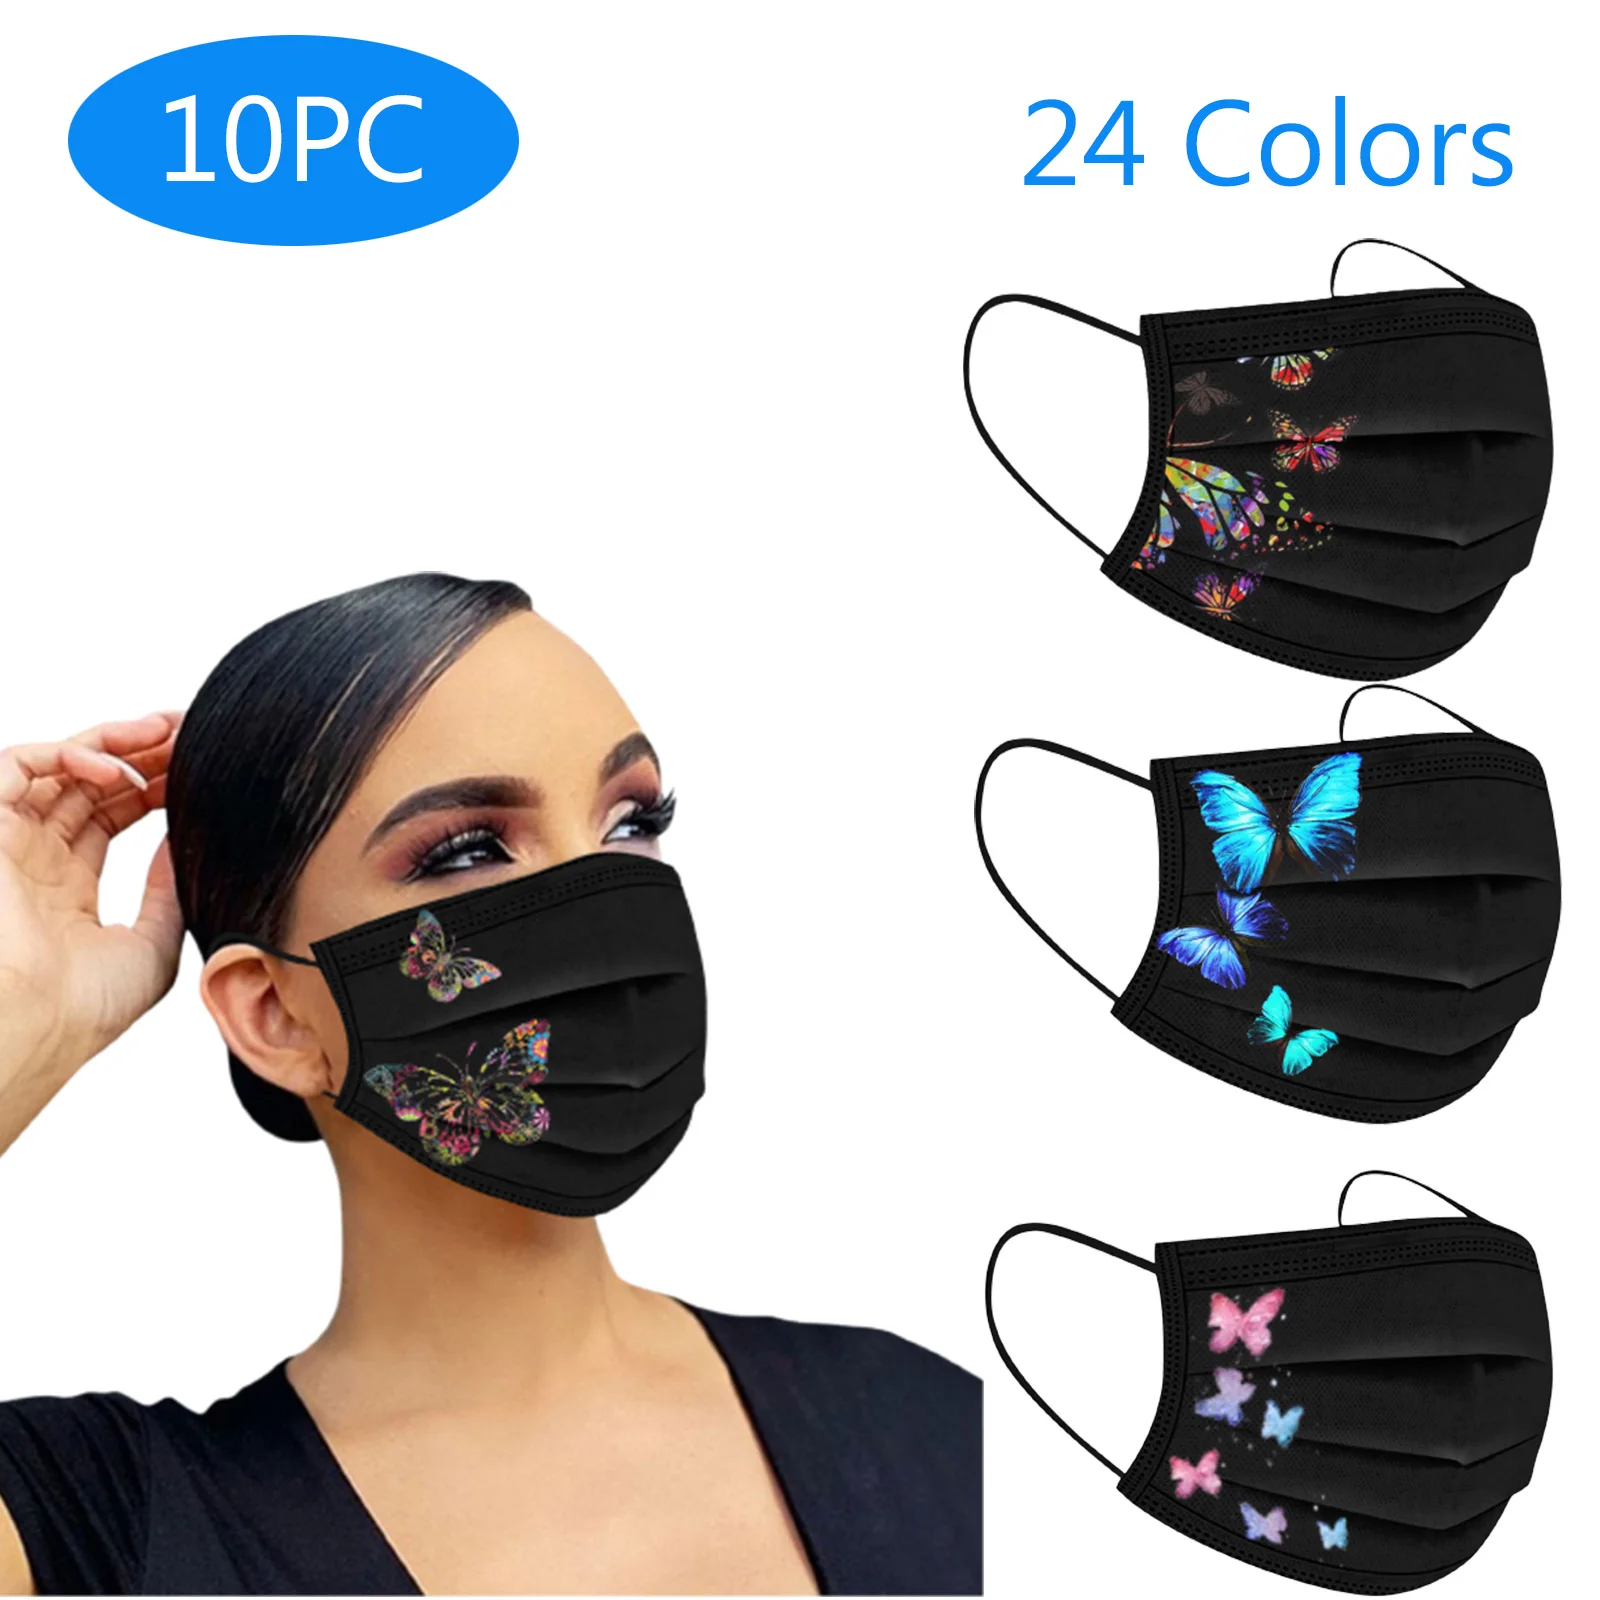 

Маска для лица для взрослых, 24 стиля, черная стрекоза, бабочки, дышащая 3-слойная Ушная петля, 10 шт., для женщин и мужчин, одноразовая маска для лица